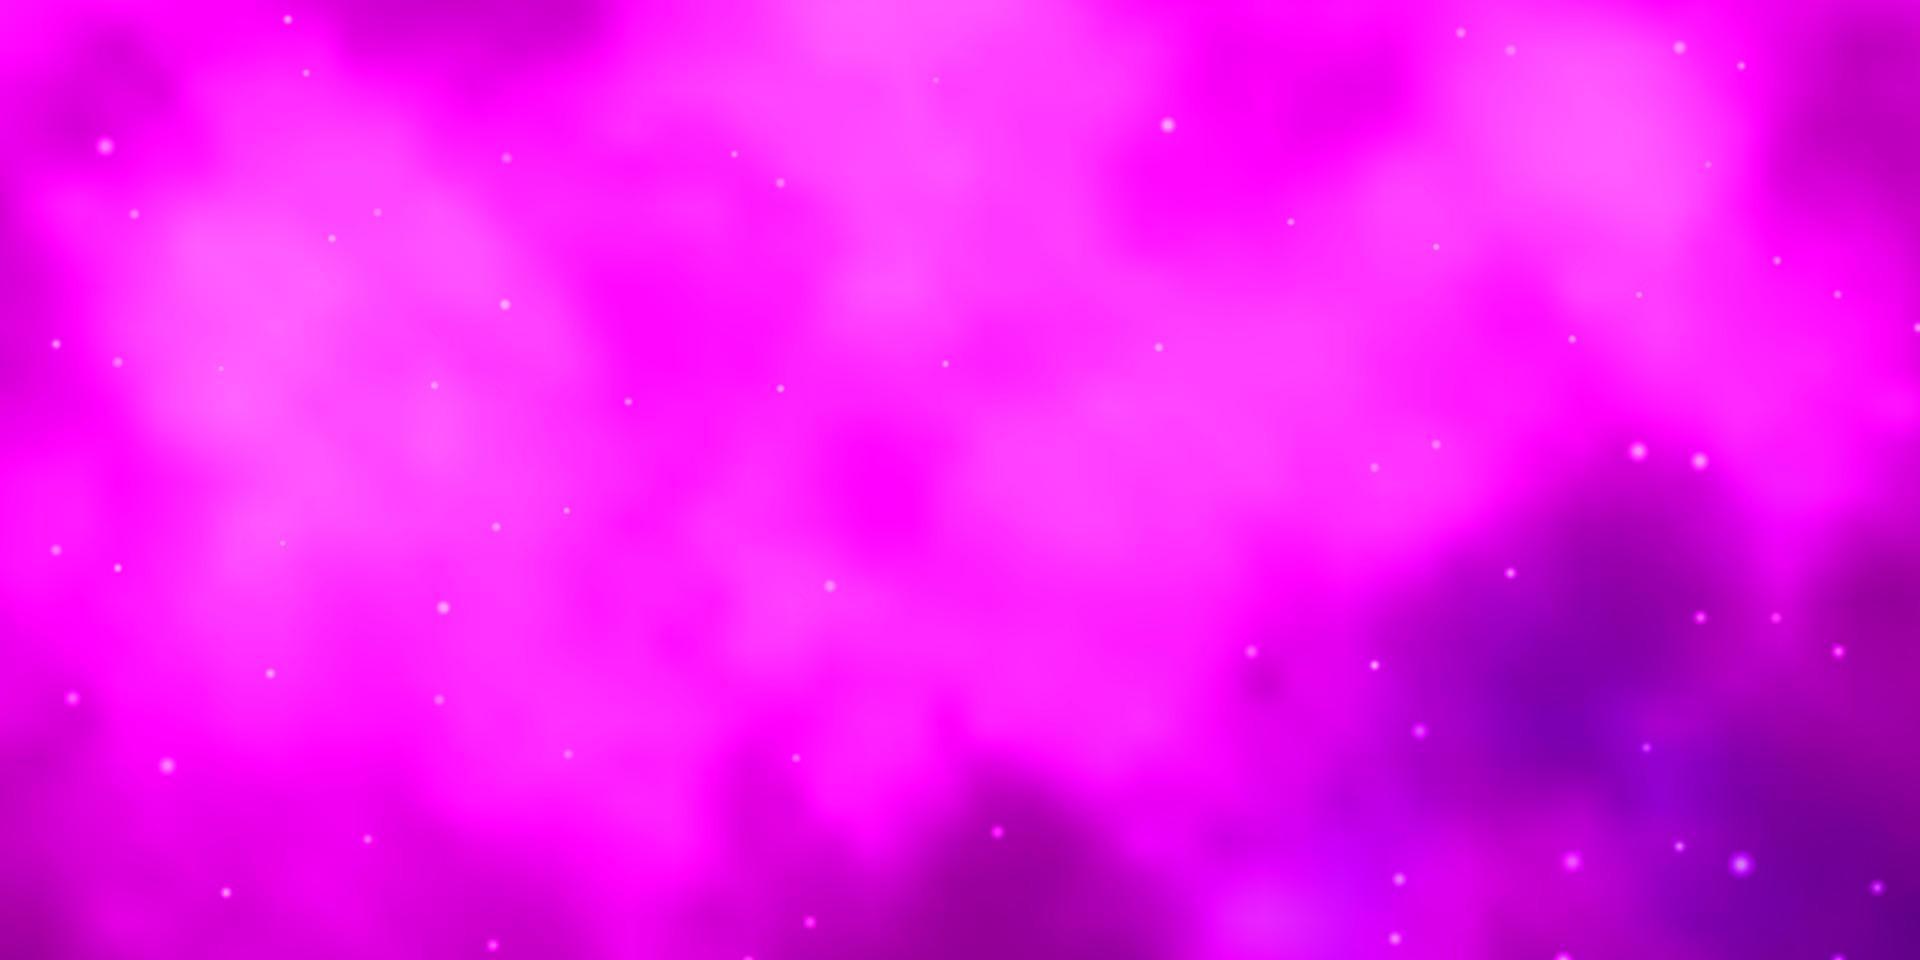 sfondo vettoriale rosa chiaro con stelle piccole e grandi.